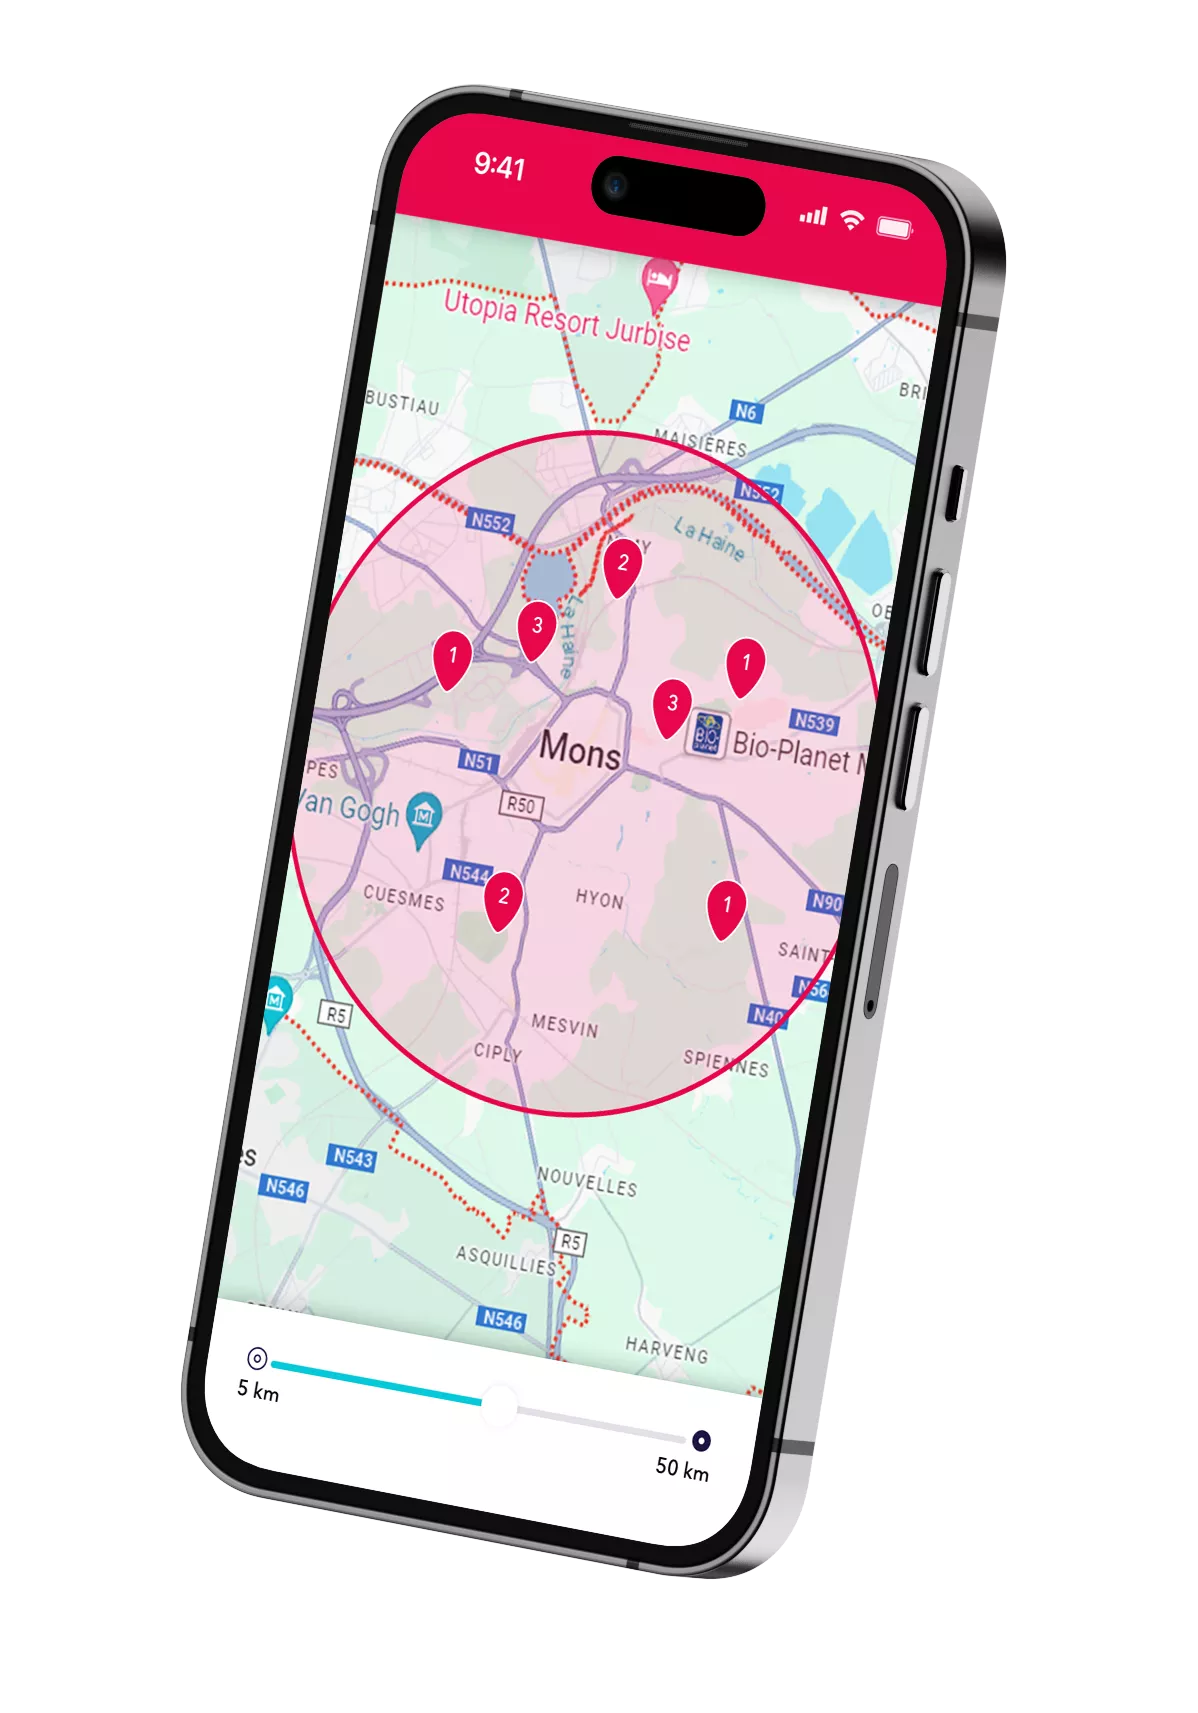 Un smartphone montrant les possibilités de flexi-jobs dans la région de Mons